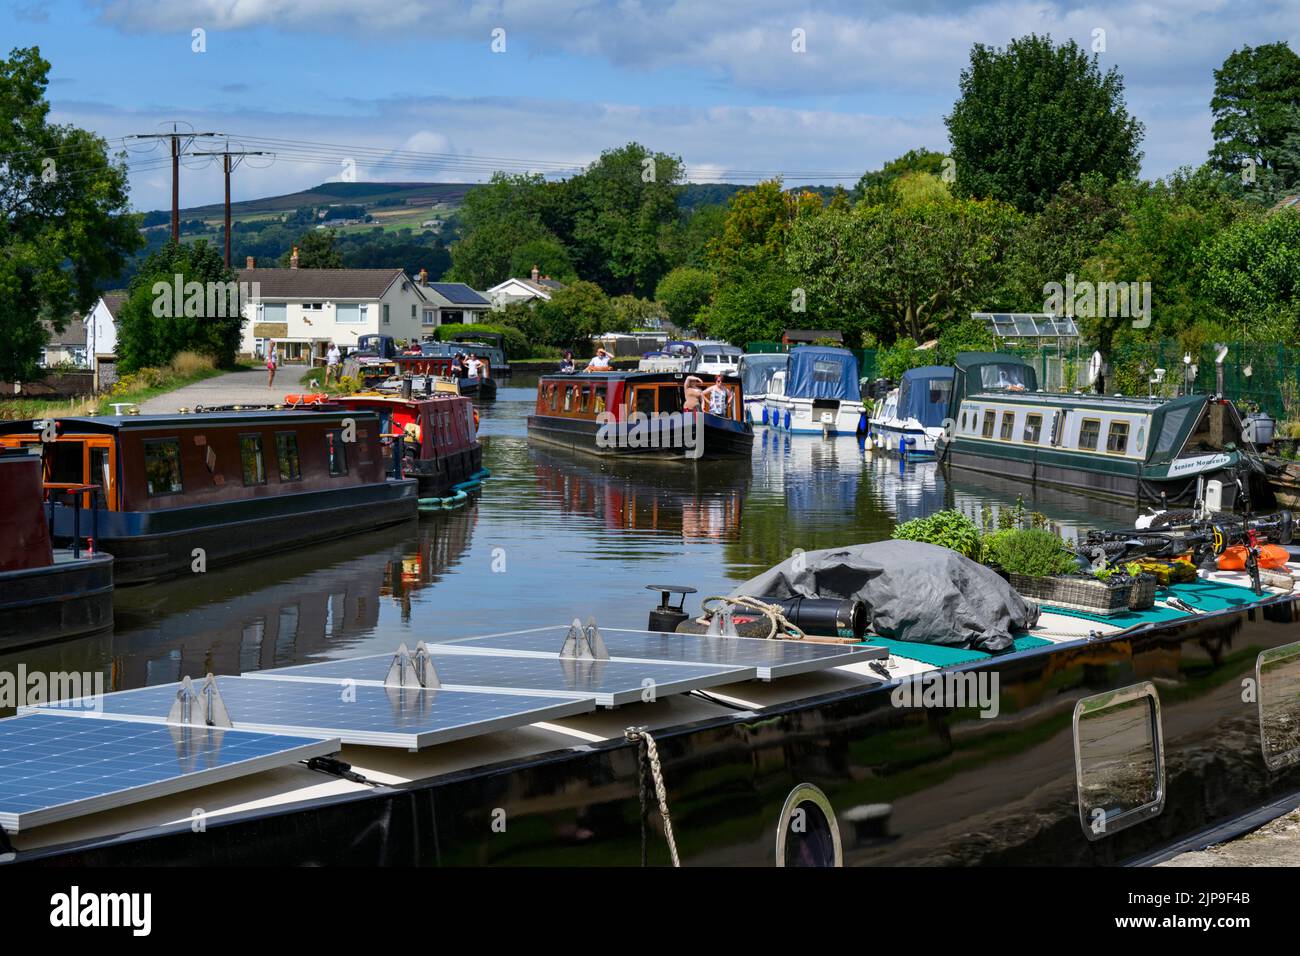 Chiatte agli ormeggi affollati, noleggio auto in barca in viaggio, tratto panoramico e soleggiato di Leeds Liverpool Canal & Towpath - Bingley, West Yorkshire Inghilterra UK. Foto Stock